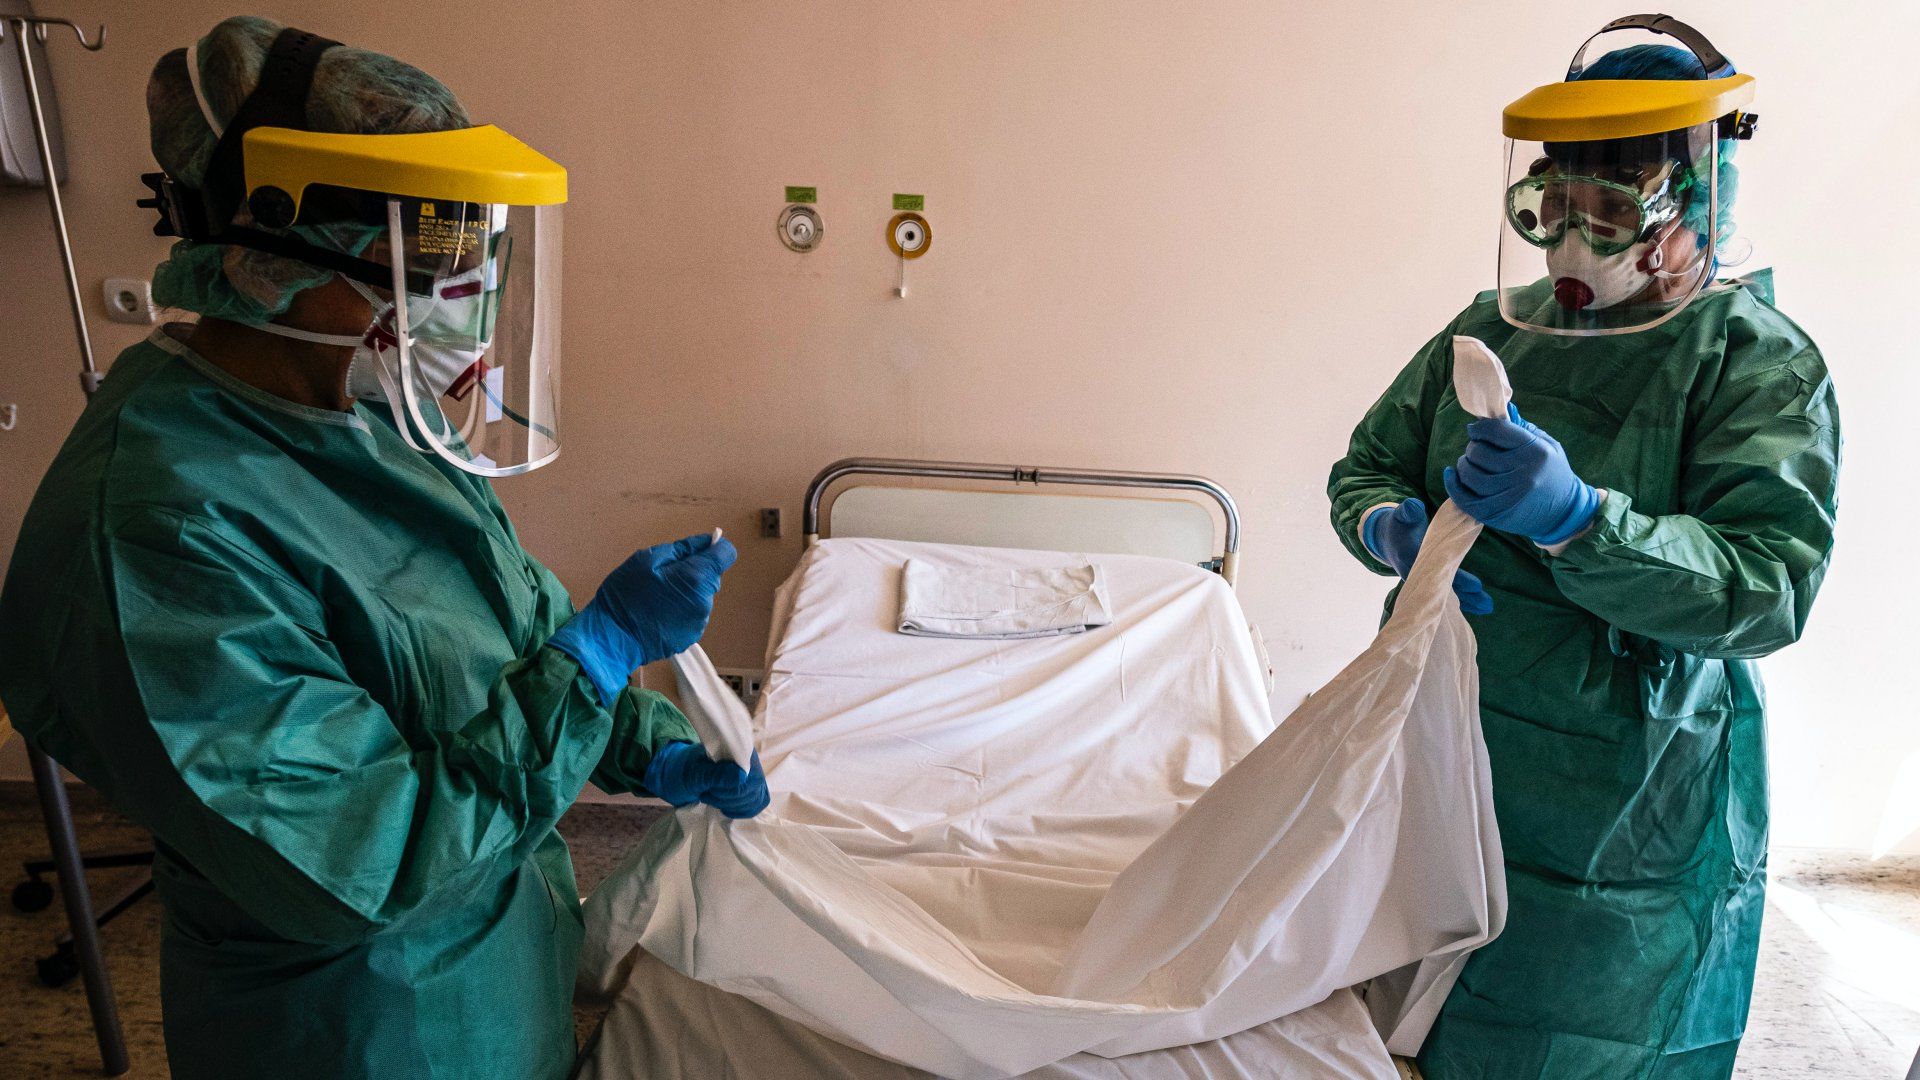 Védőfelszerelést viselő nővérek egy kórtermet készítenek elő a koronavírussal érintett új betegek fogadására kialakított egyik osztályon a fõvárosi Szent László Kórházban 2020. március 16-án (Fotó: MTI/Szigetváry Zsolt)